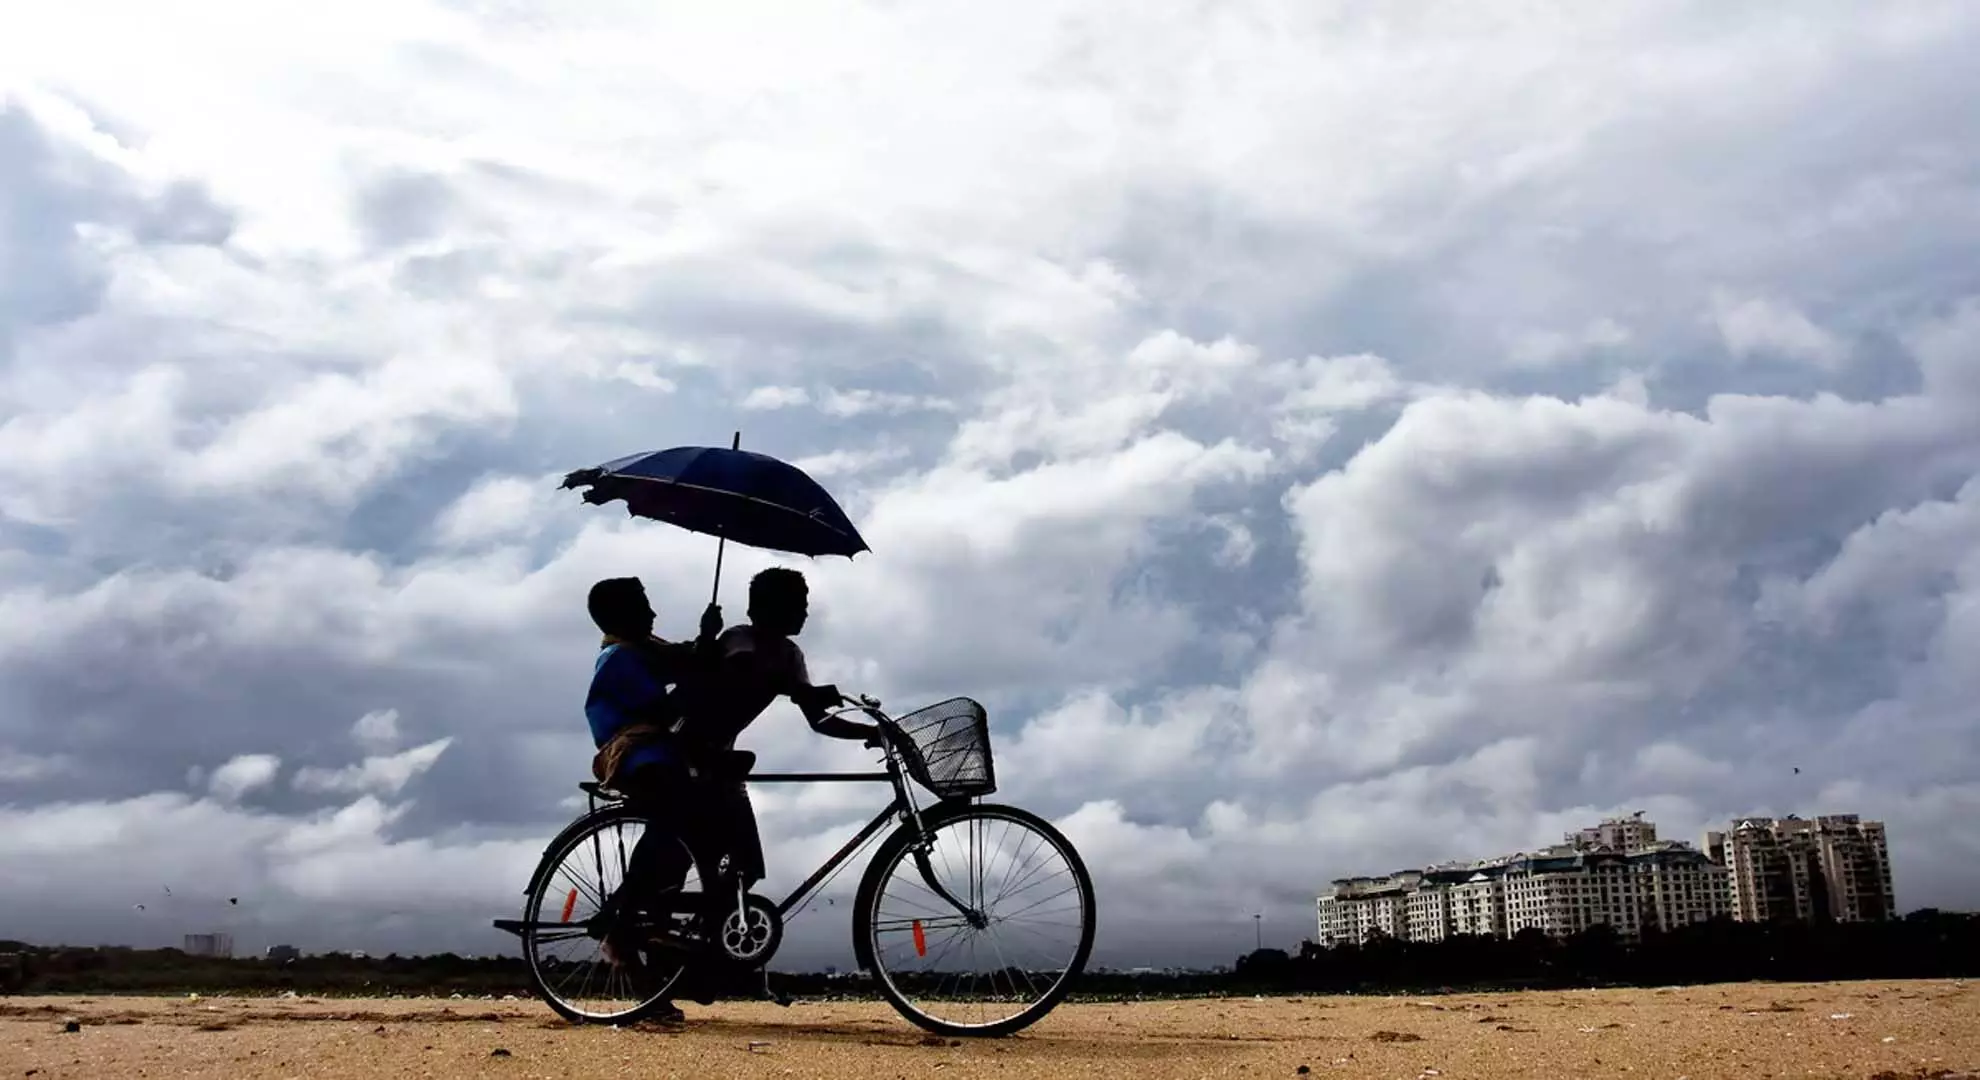 आईएमडी का अनुमान है कि बेंगलुरु में एक और हफ्ते तक बारिश नहीं होगी